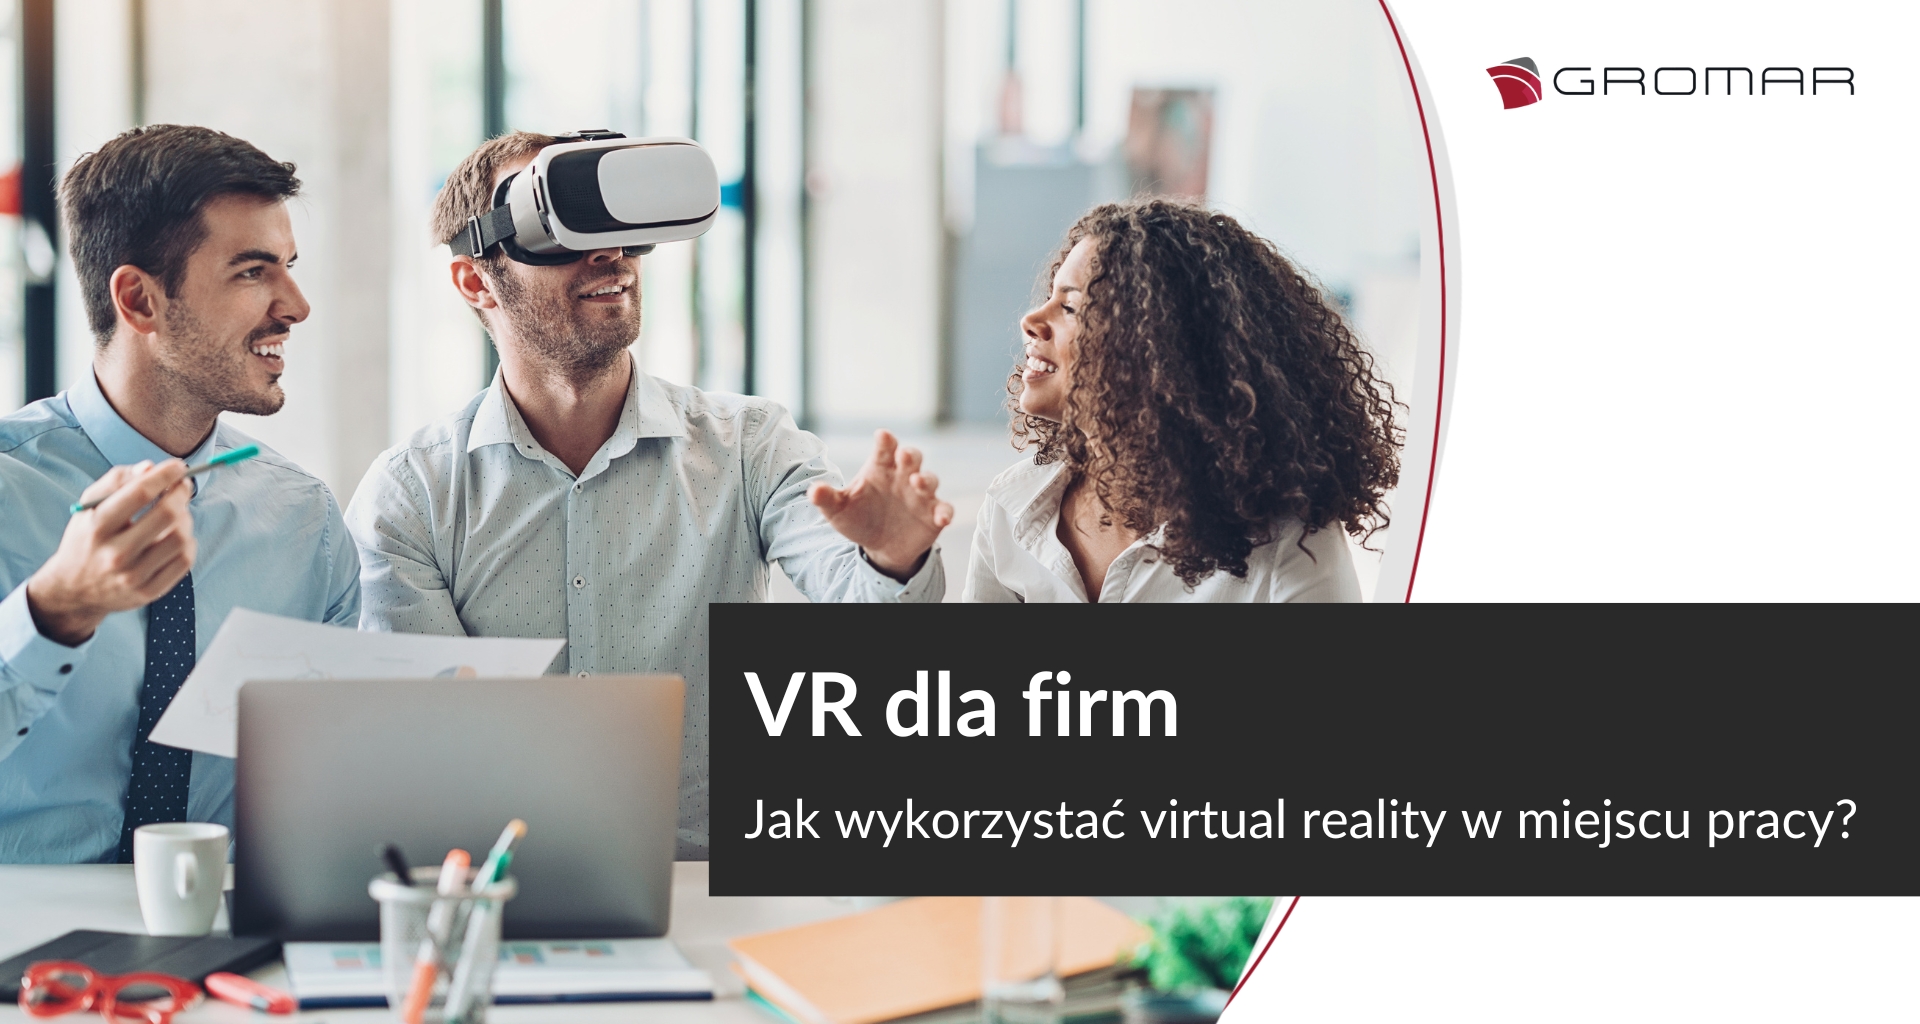 VR dla firm. Jak wykorzystać virtual reality w miejscu pracy?